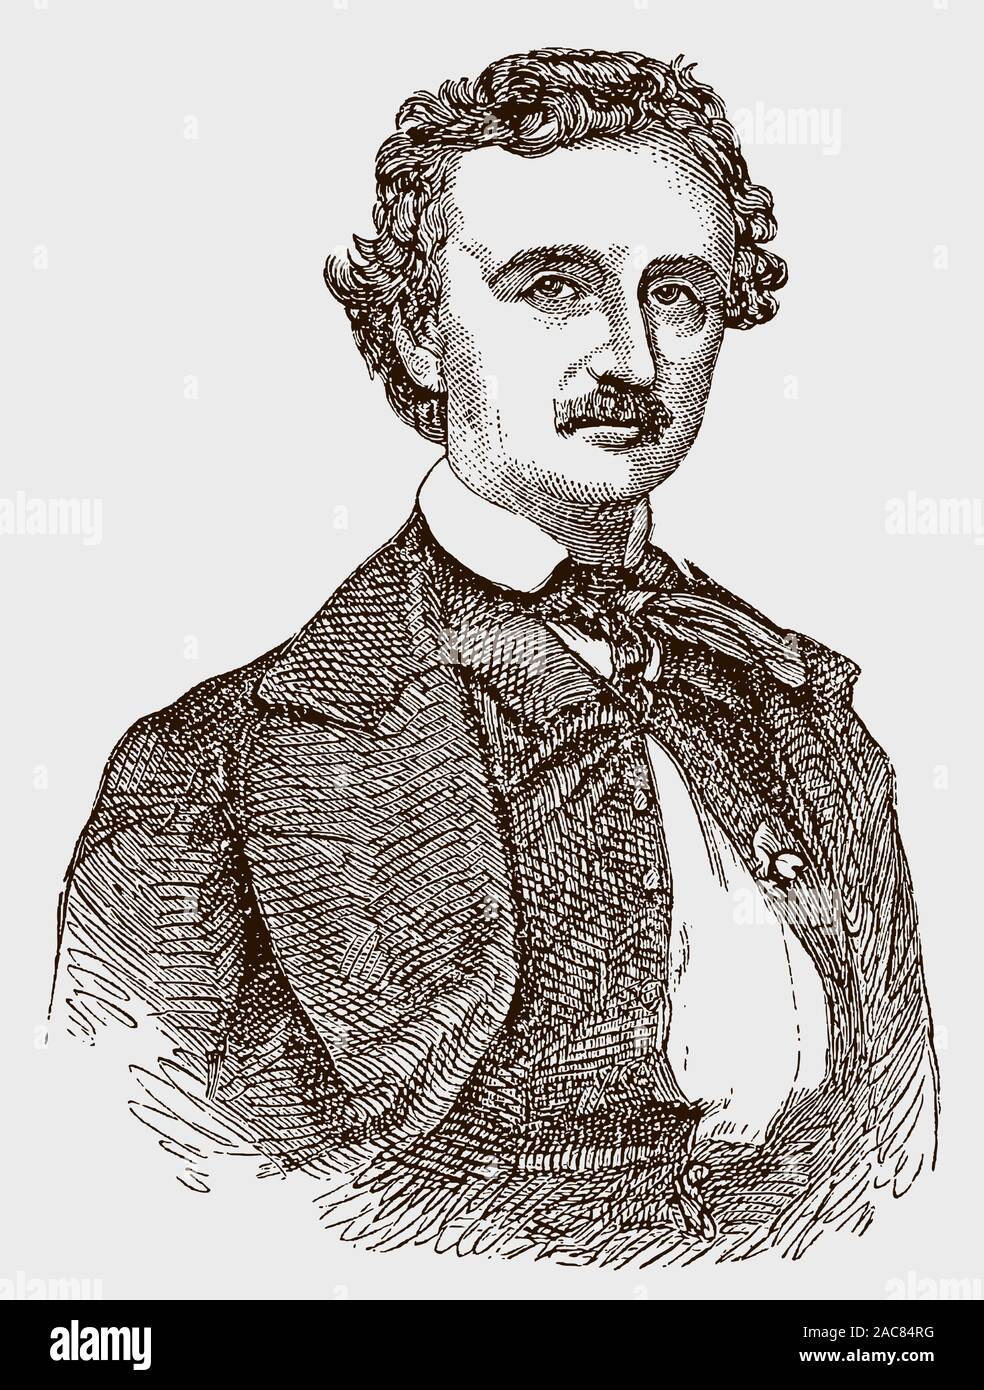 Historische Portrait von Edgar Allan Poe, der amerikanische Schriftsteller. Abbildung: Nach einem Stich oder der Lithographie aus dem 19. Jahrhundert Stock Vektor